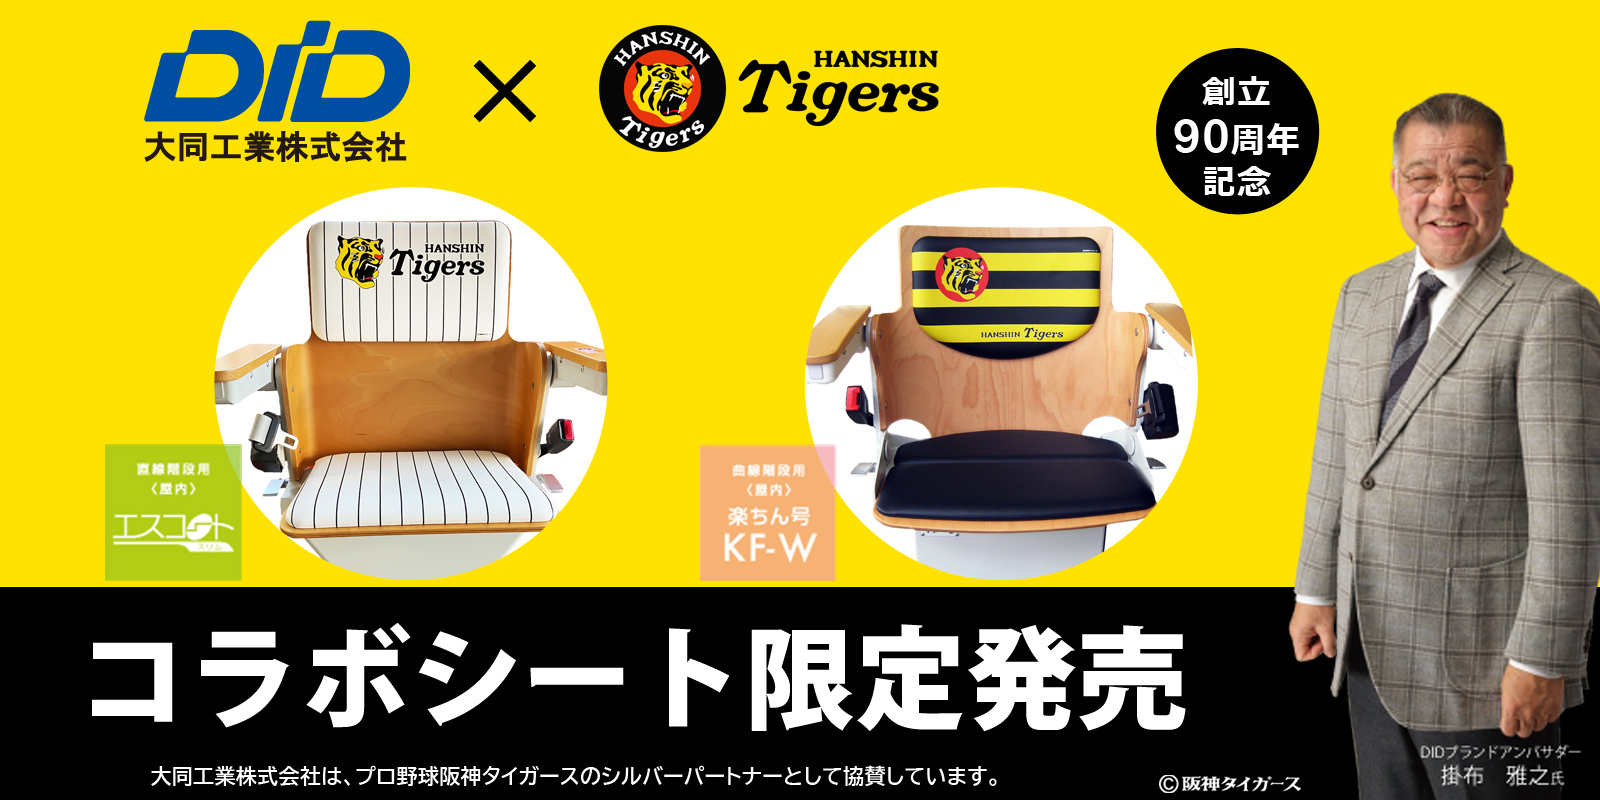 阪神タイガースとコラボしたエスコートスリム、KF-W型のシート限定販売